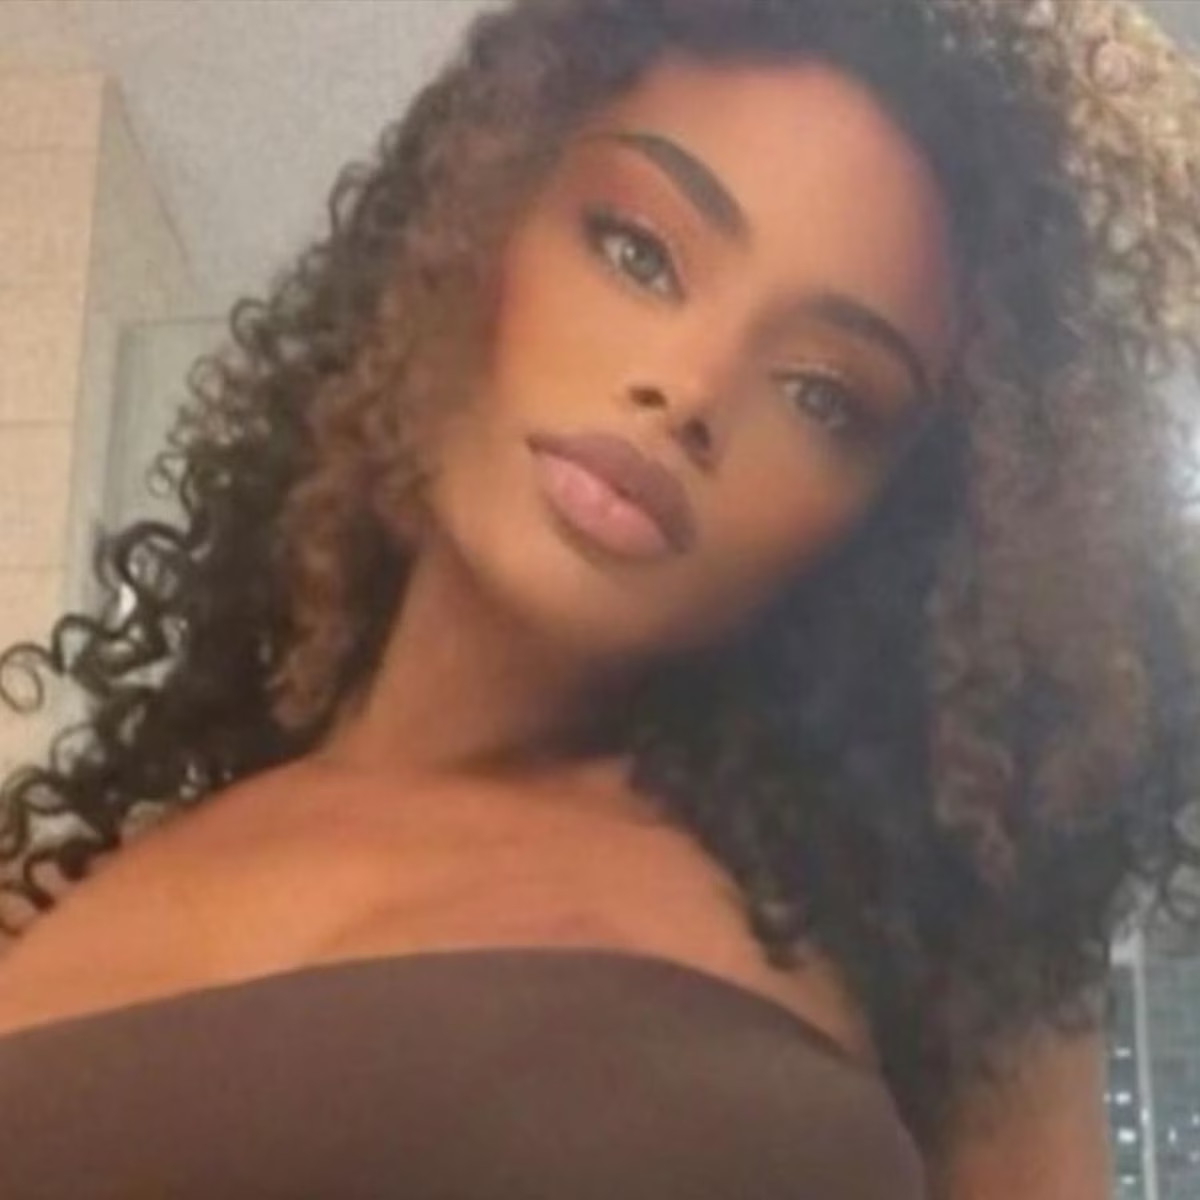 Người mẫu 31 tuổi Maleesa Mooney qua đời trong tủ lạnh khiến nhiều người bàng hoàng